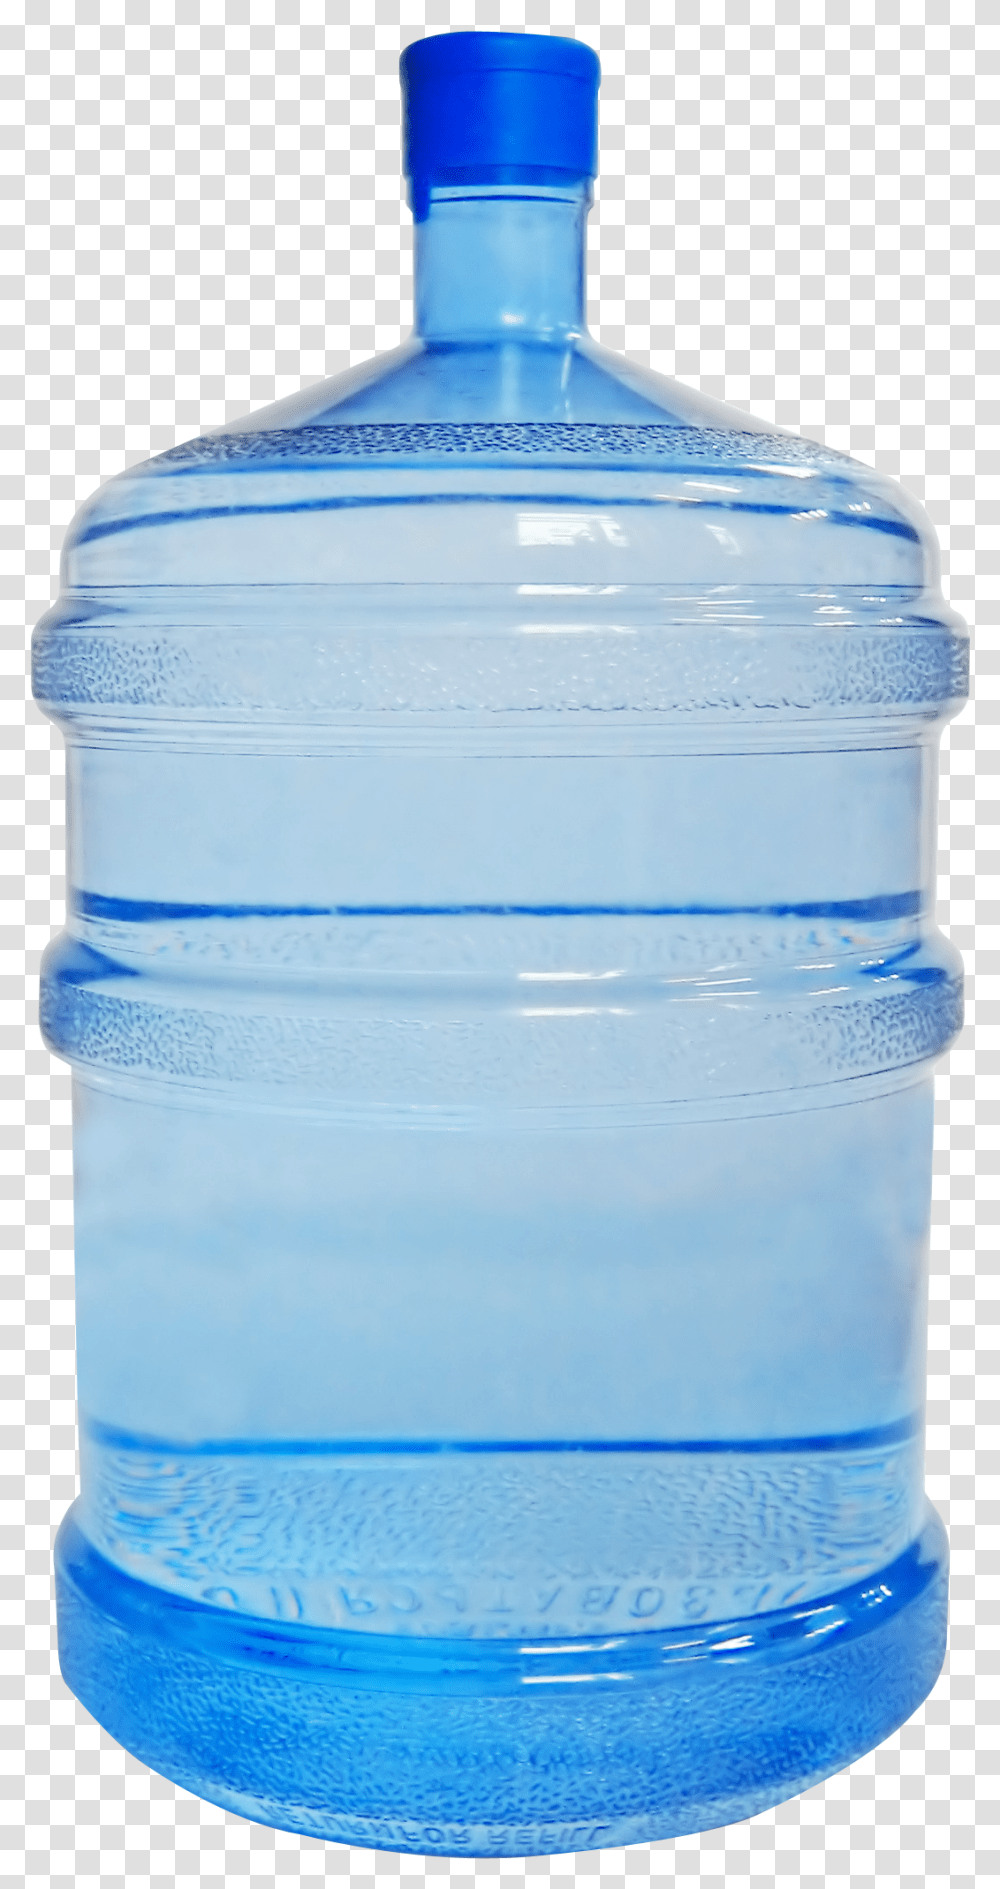 Water Bottle Clean Images Free Download Plastic 5 Gallon Water Bottle, Jug, Milk, Beverage, Drink Transparent Png